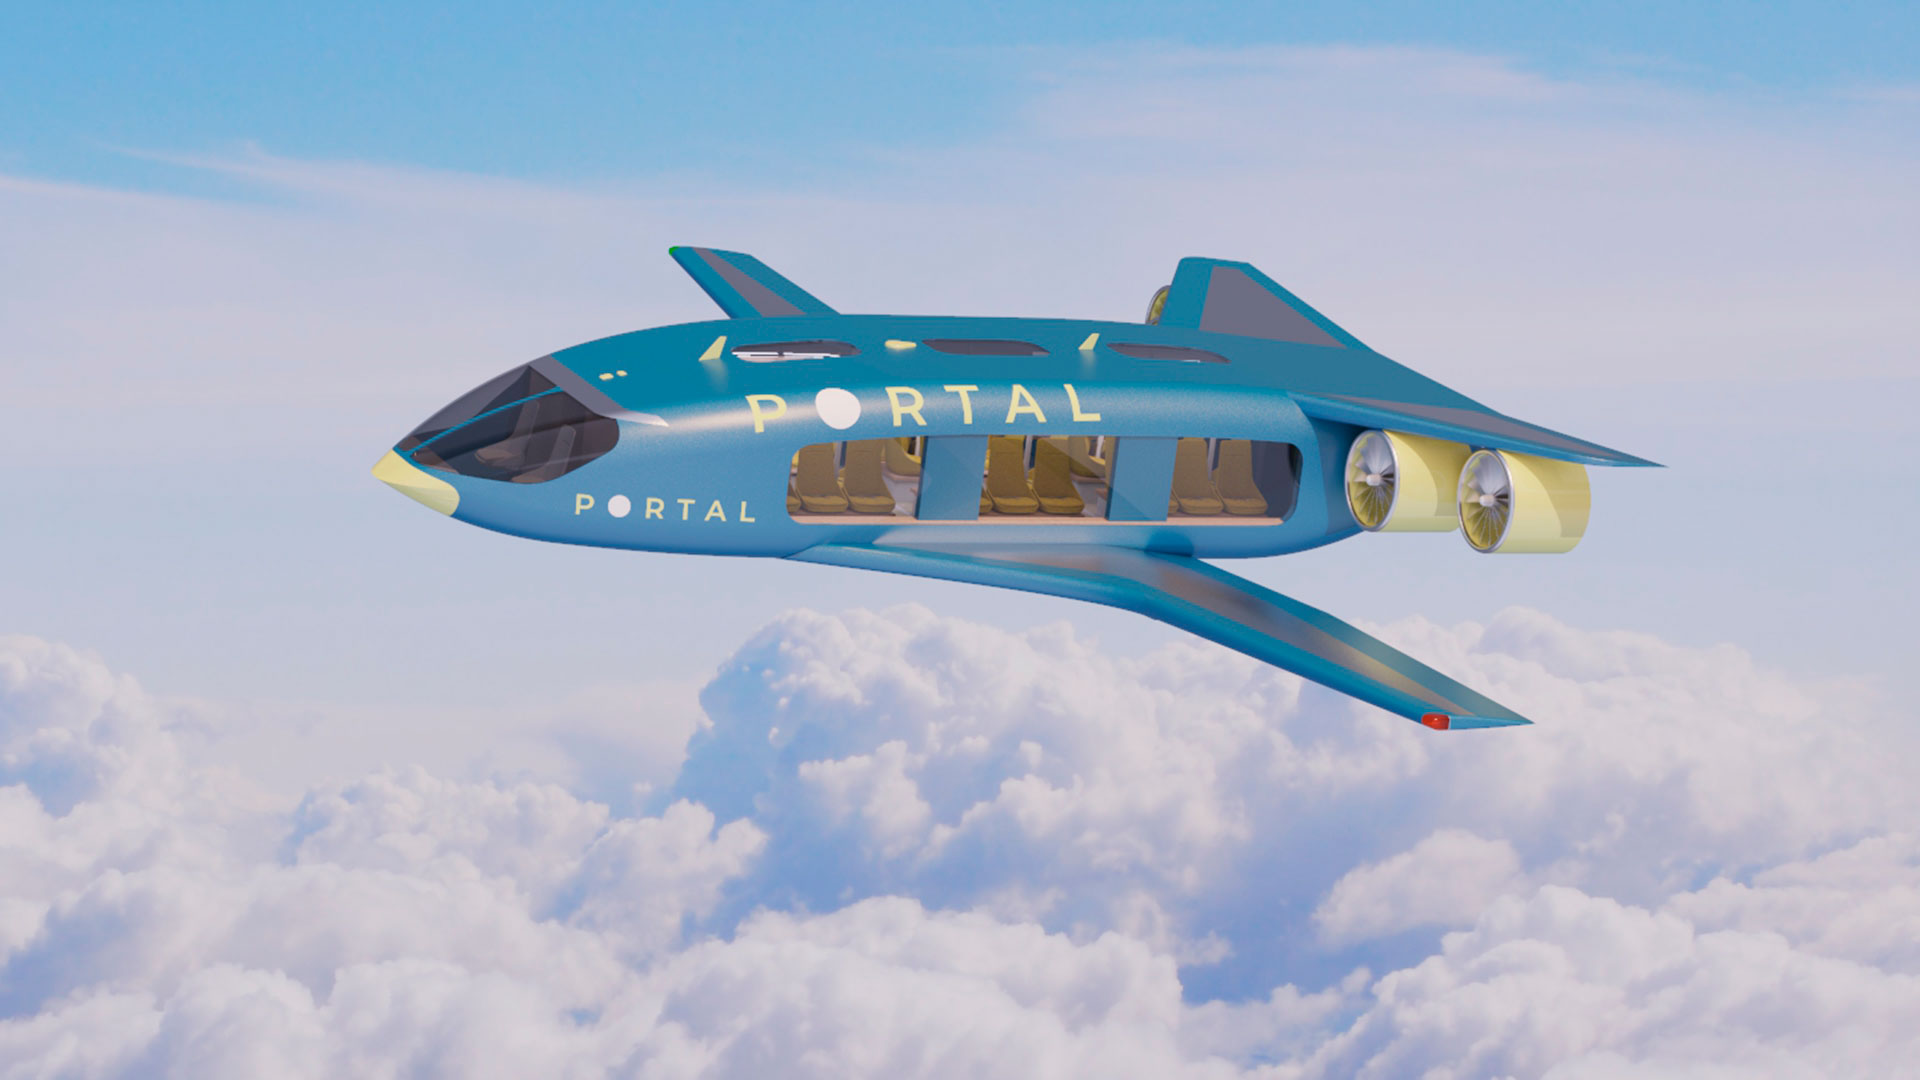 Los aviones Portal serían completamente eléctricos y se emplearían para trayectos de hasta 1.600 kilómetros